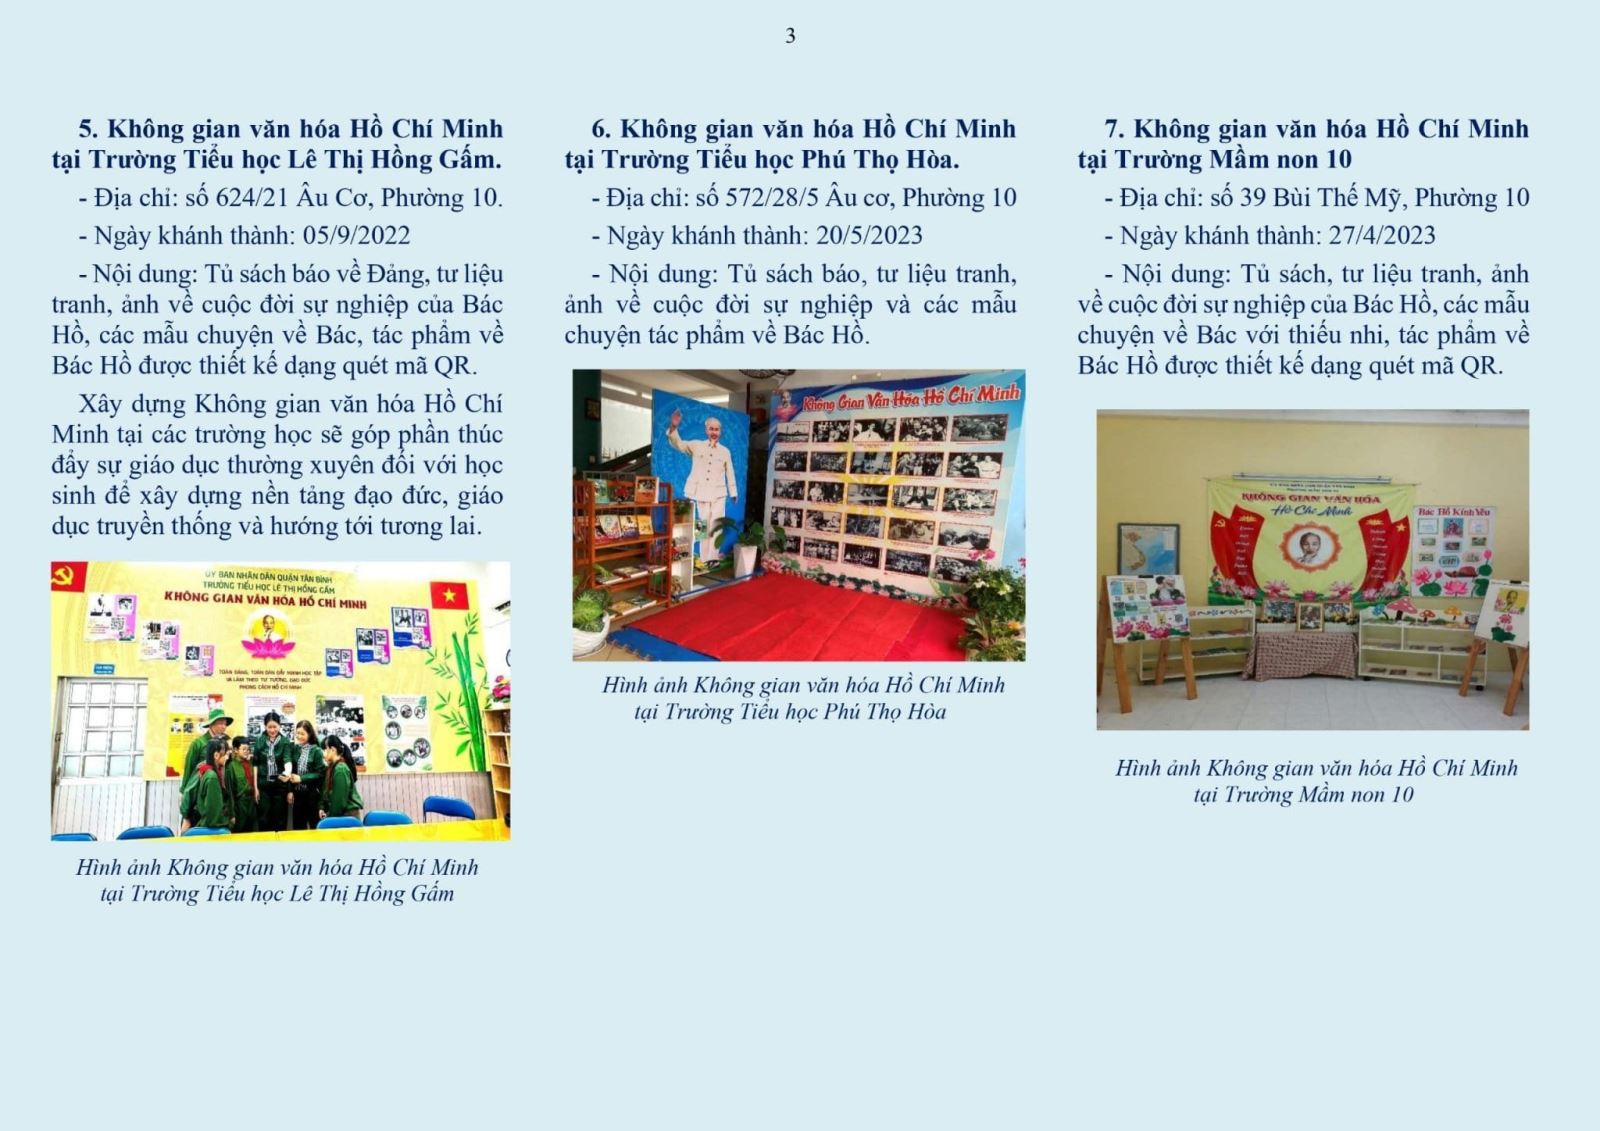 Phường 10: Phát hành tờ gấp tuyên truyền thông tin địa điểm Không gian văn hóa Hồ Chí Minh trên địa bàn phường 10